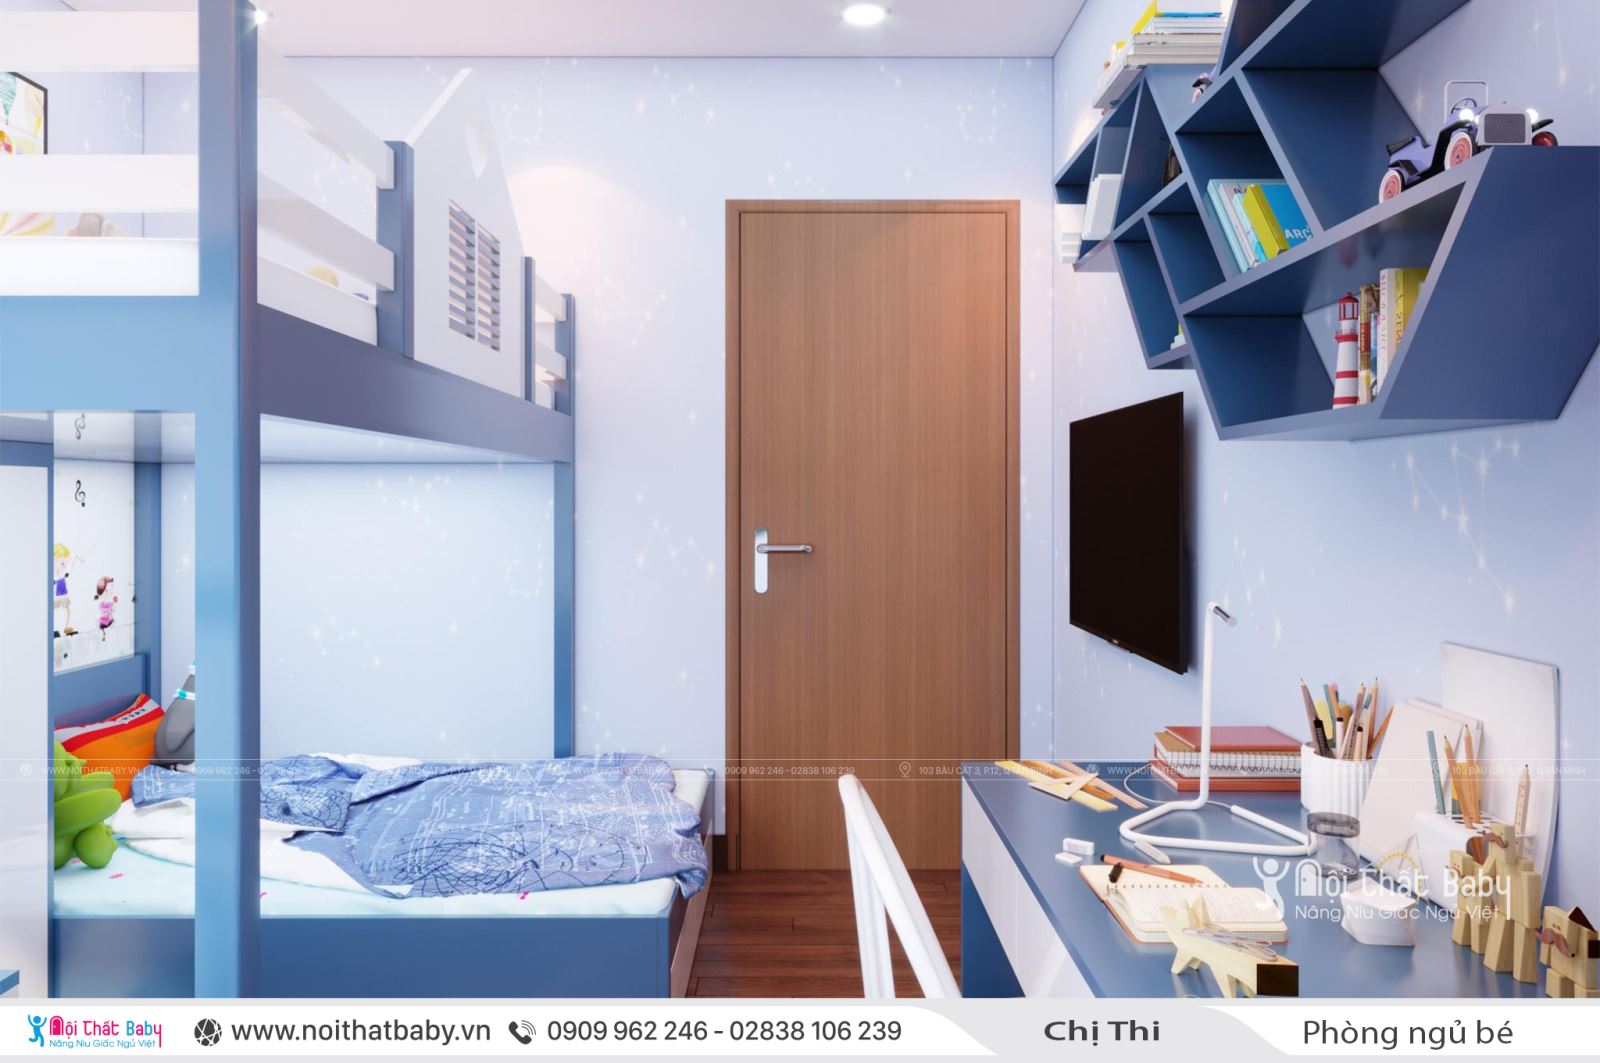 Giường tầng màu xanh cho bé trai tại căn Duplex 97m2 Emerald Celadon City